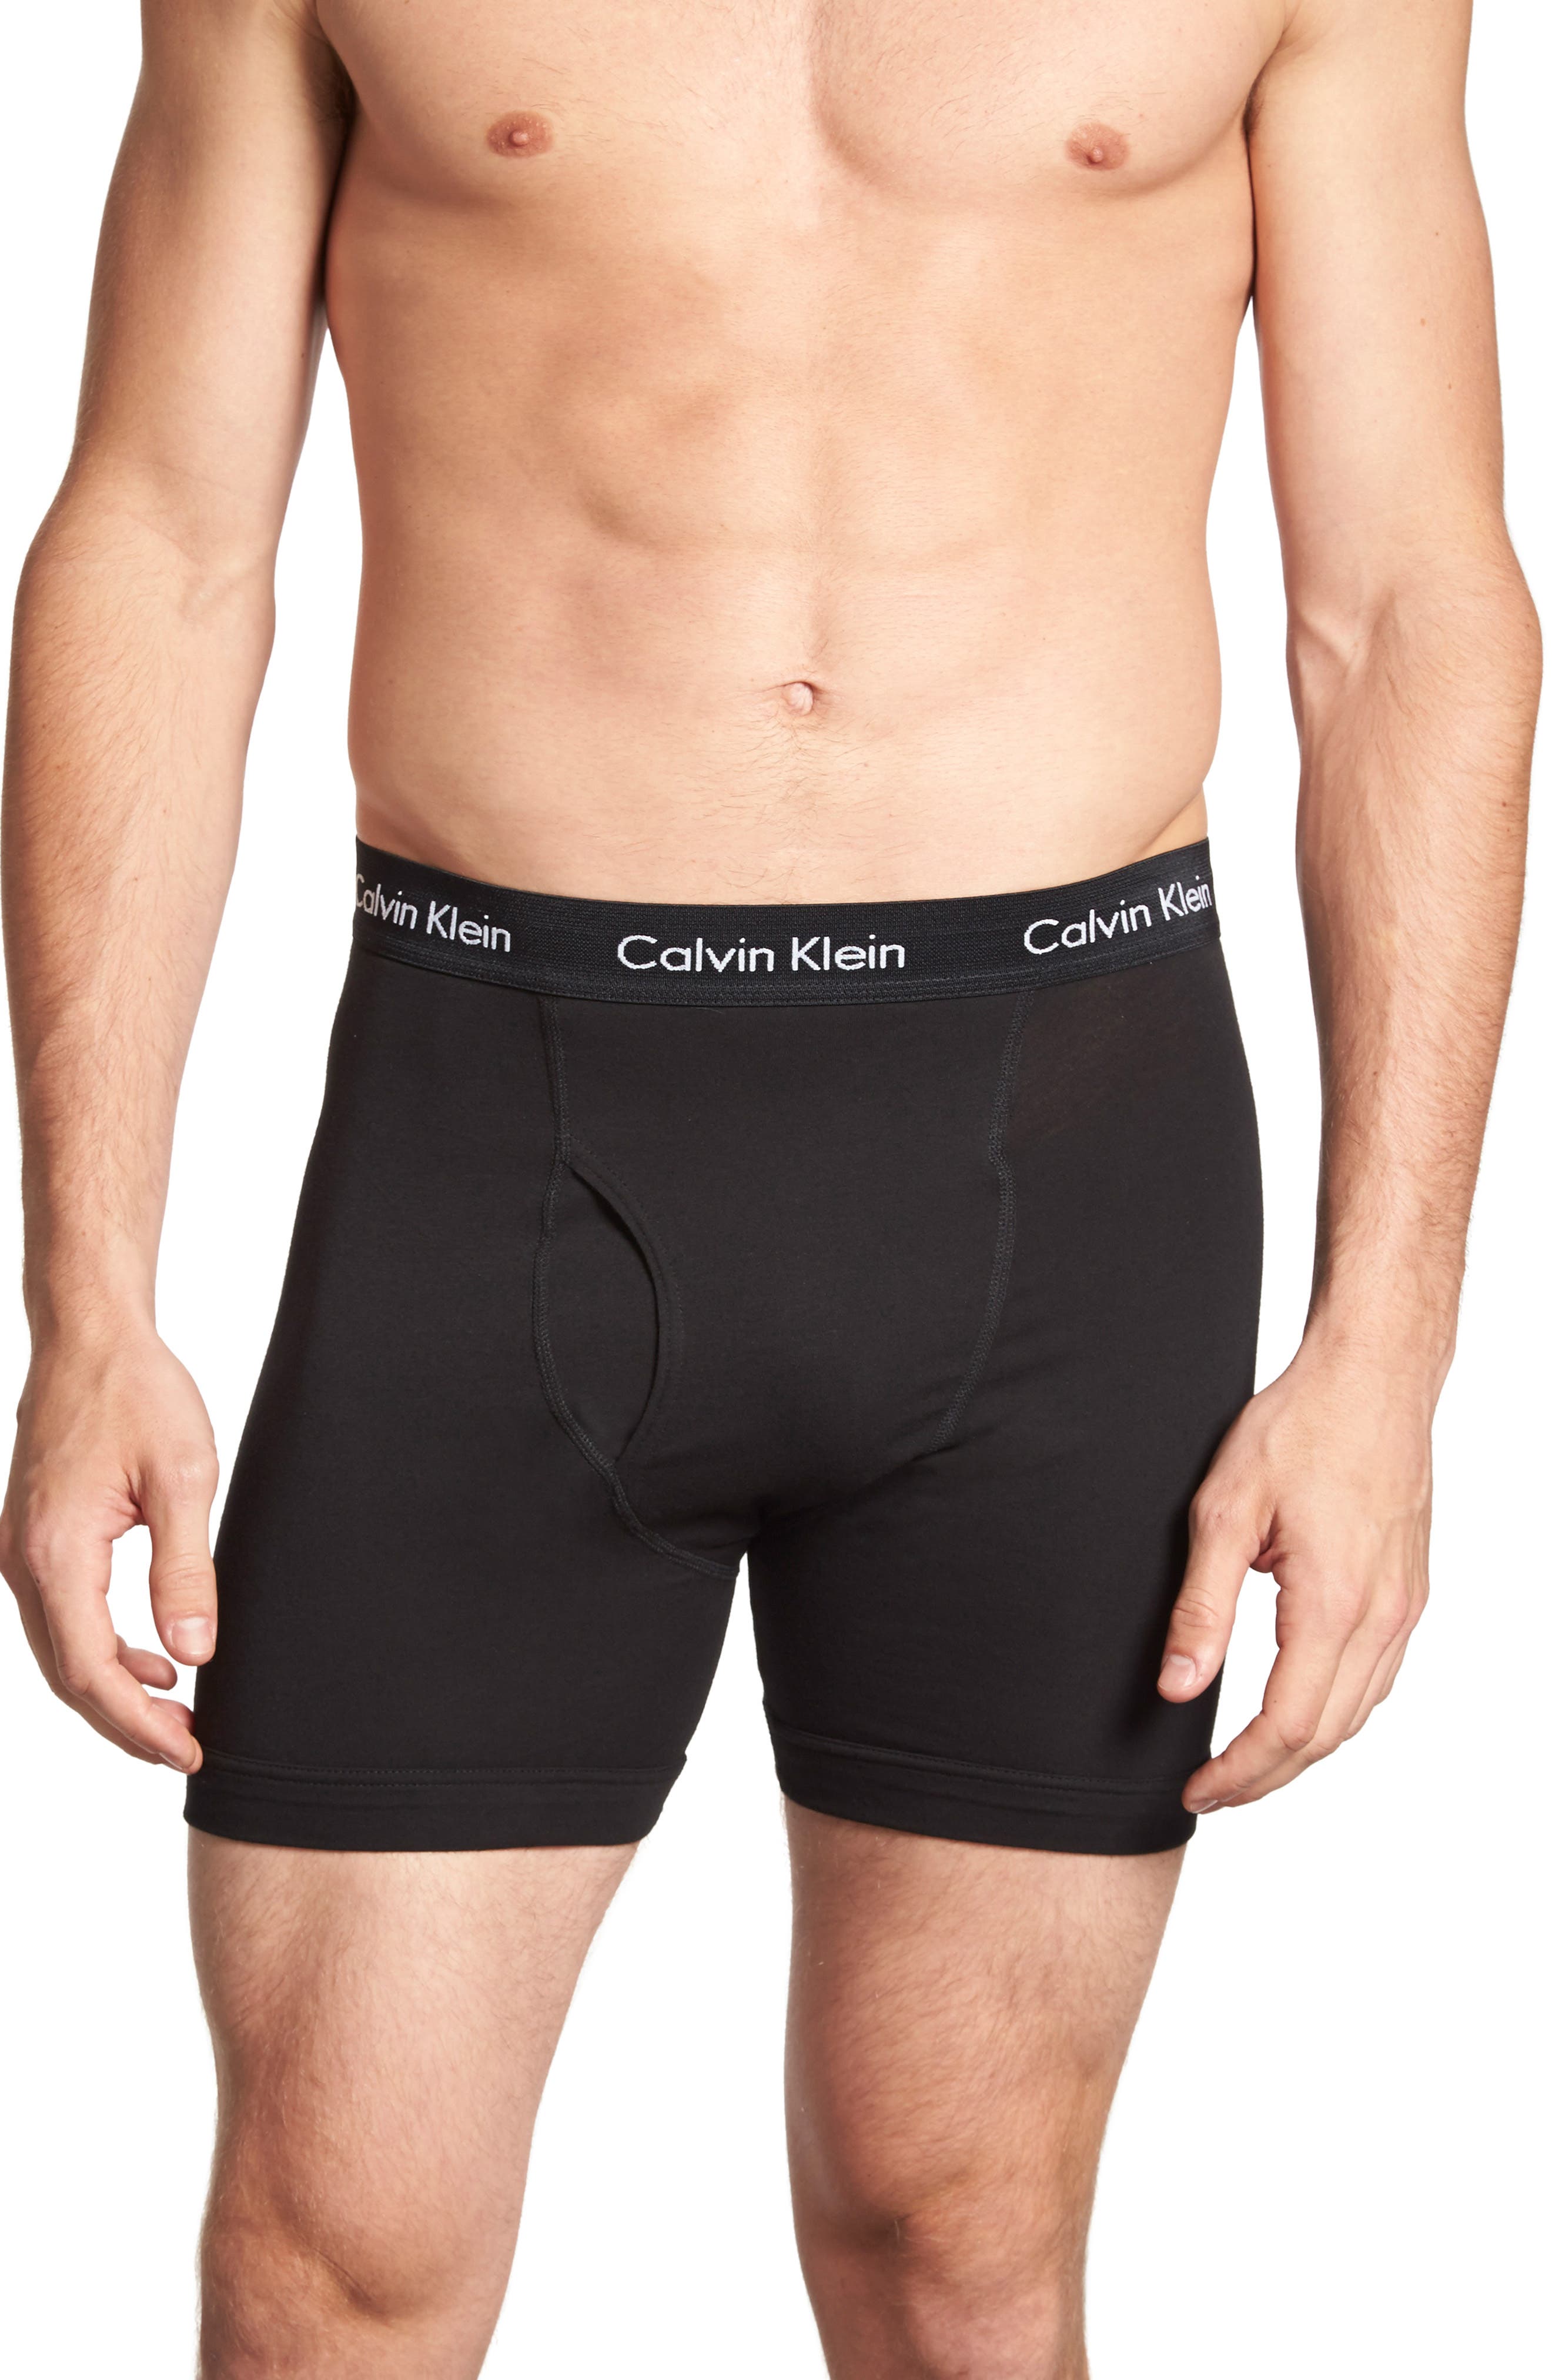 calvin klein underwear prices